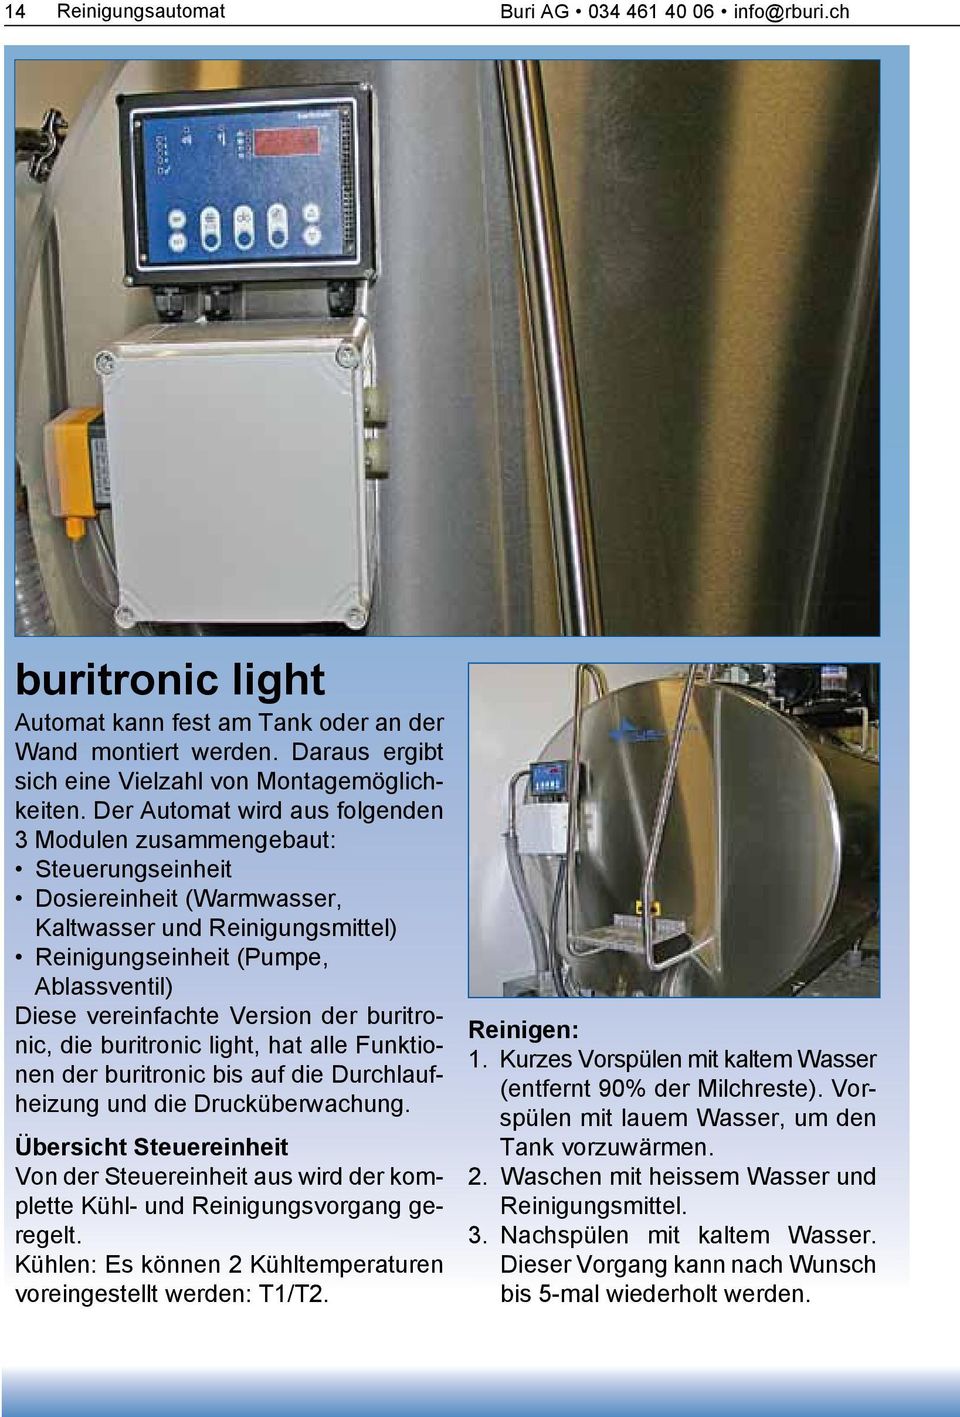 Version der buritronic, die buritronic light, hat alle Funktionen der buritronic bis auf die Durchlaufheizung und die Drucküberwachung.